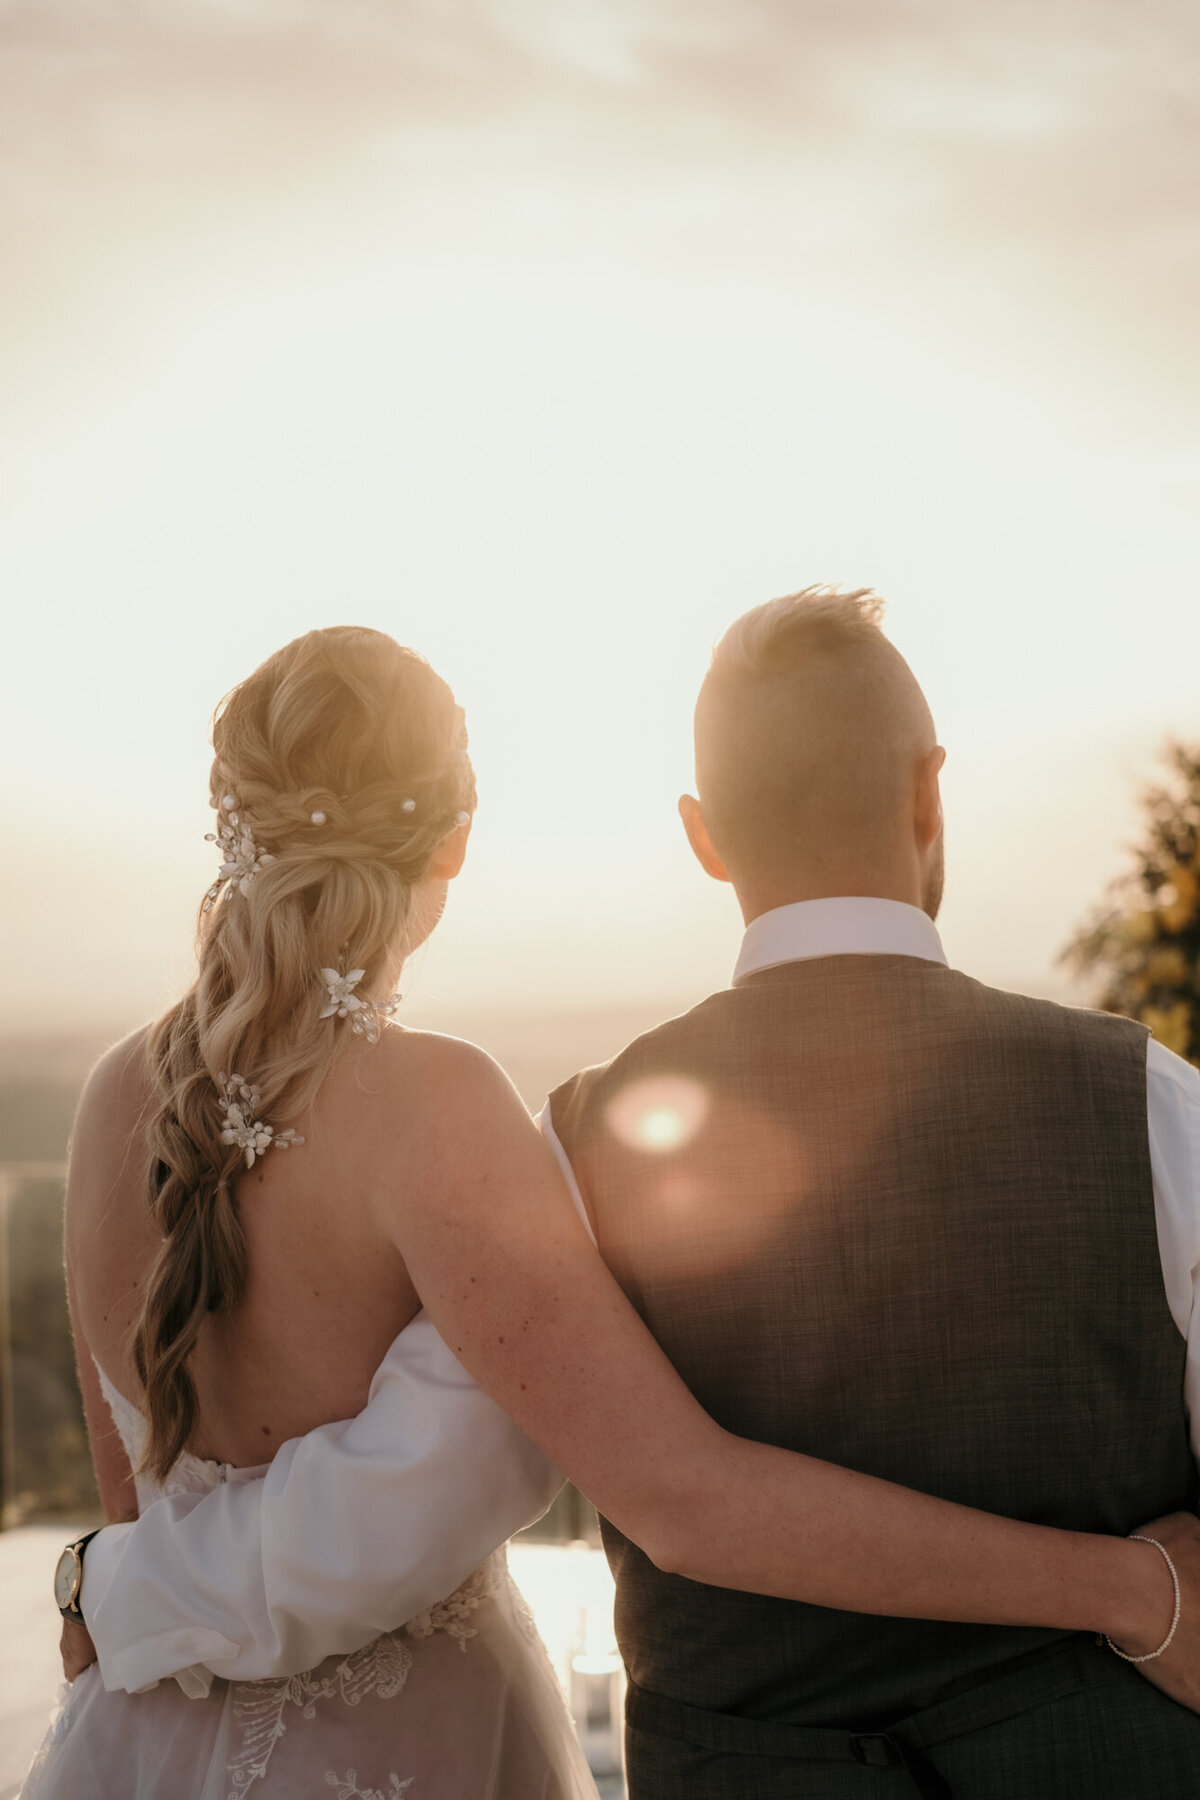 Von hinten betrachtet, sich im Arm haltend blickt das Hochzeitspaar in den Sonnenuntergang.